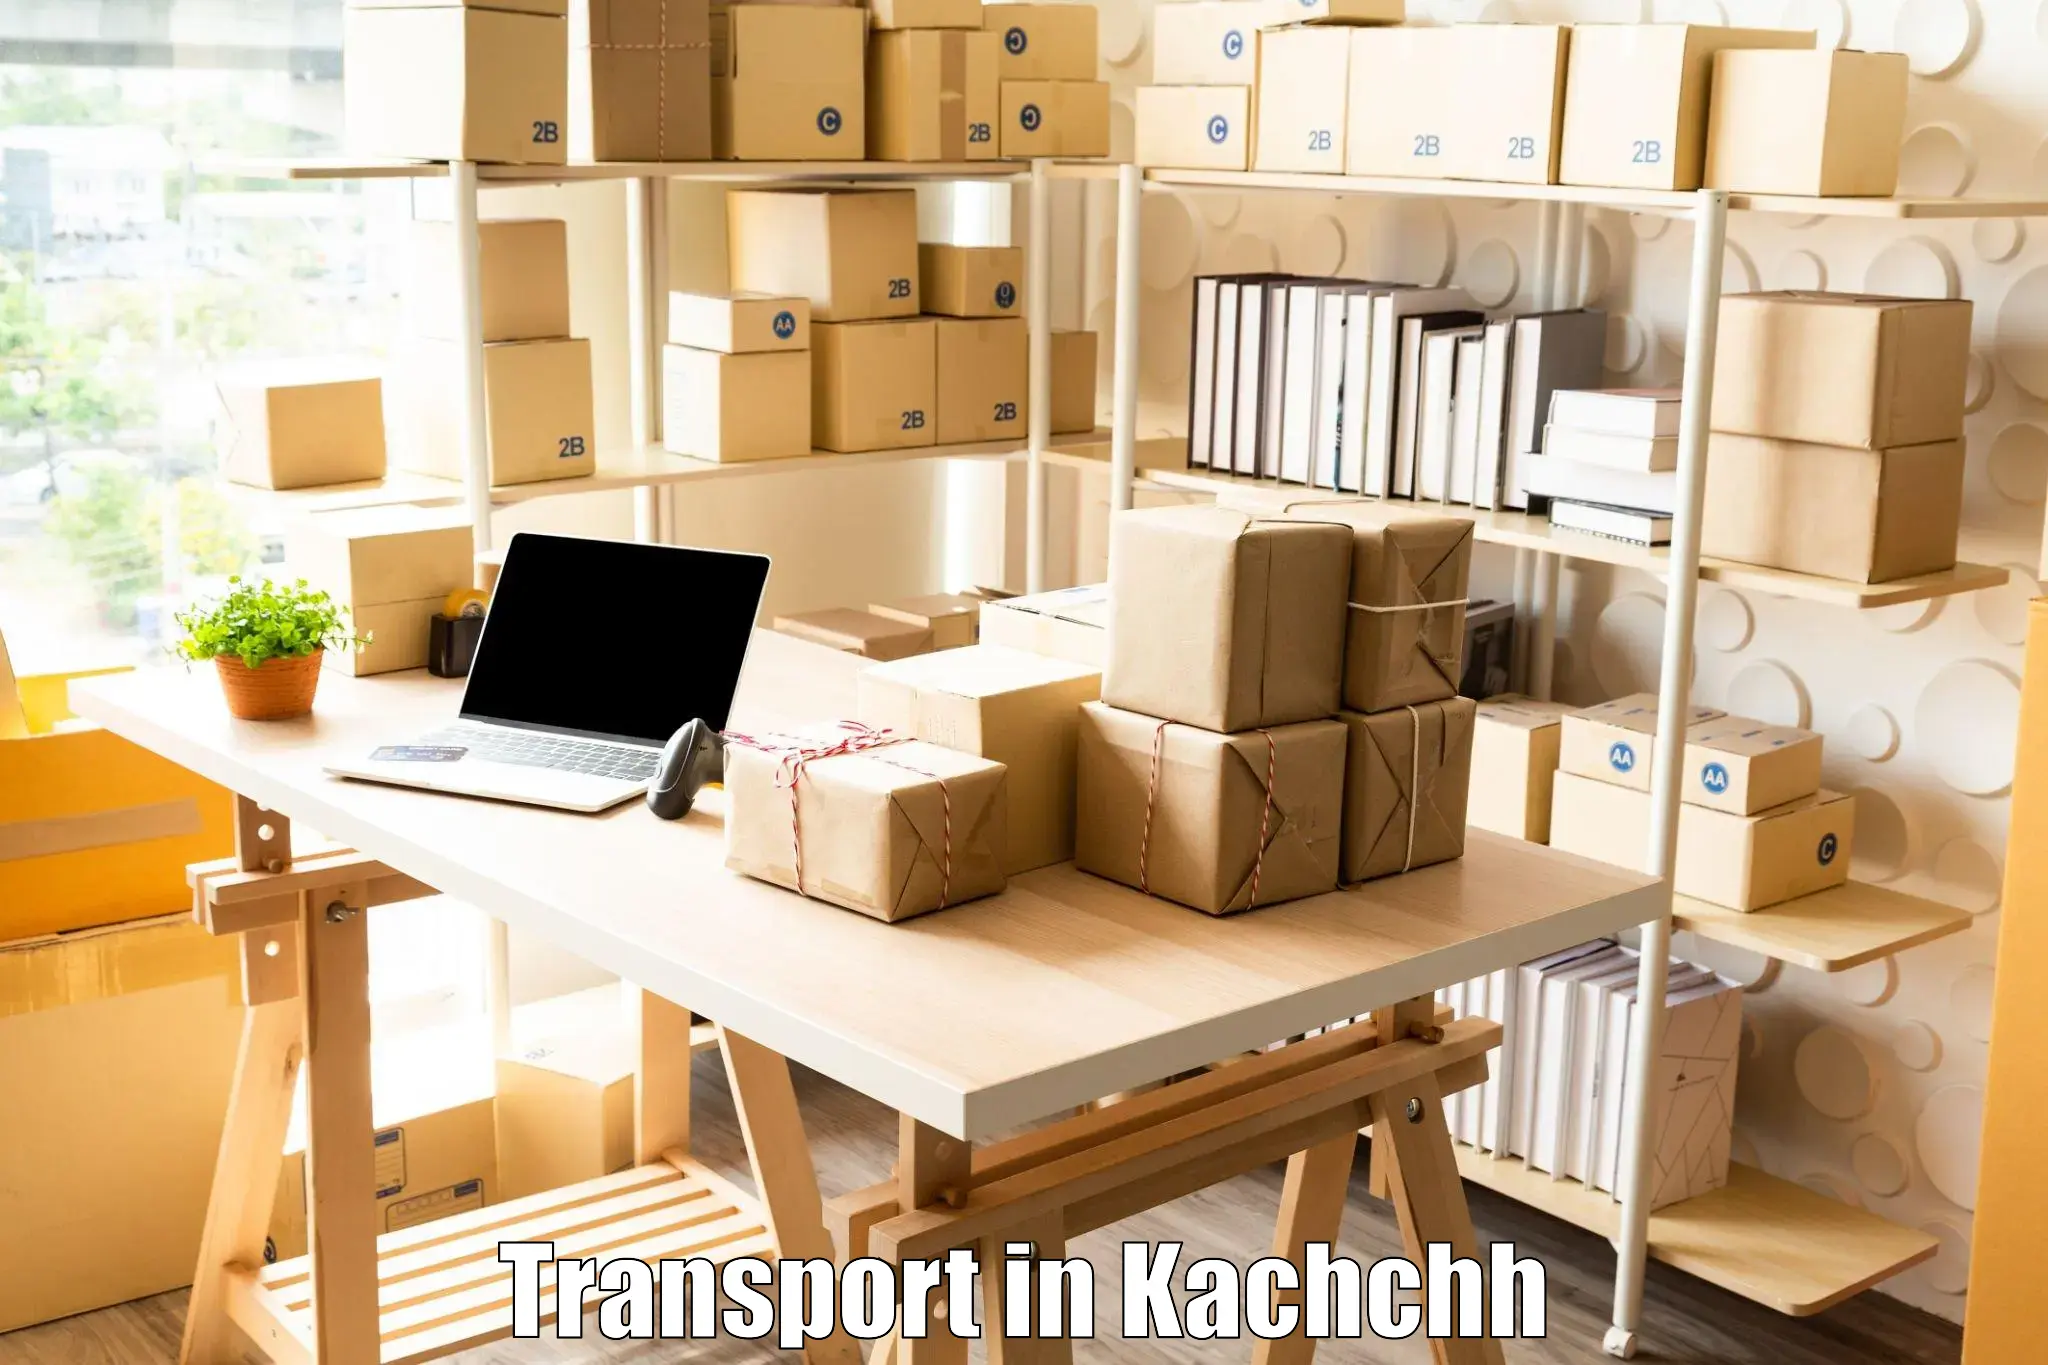 Online transport in Kachchh